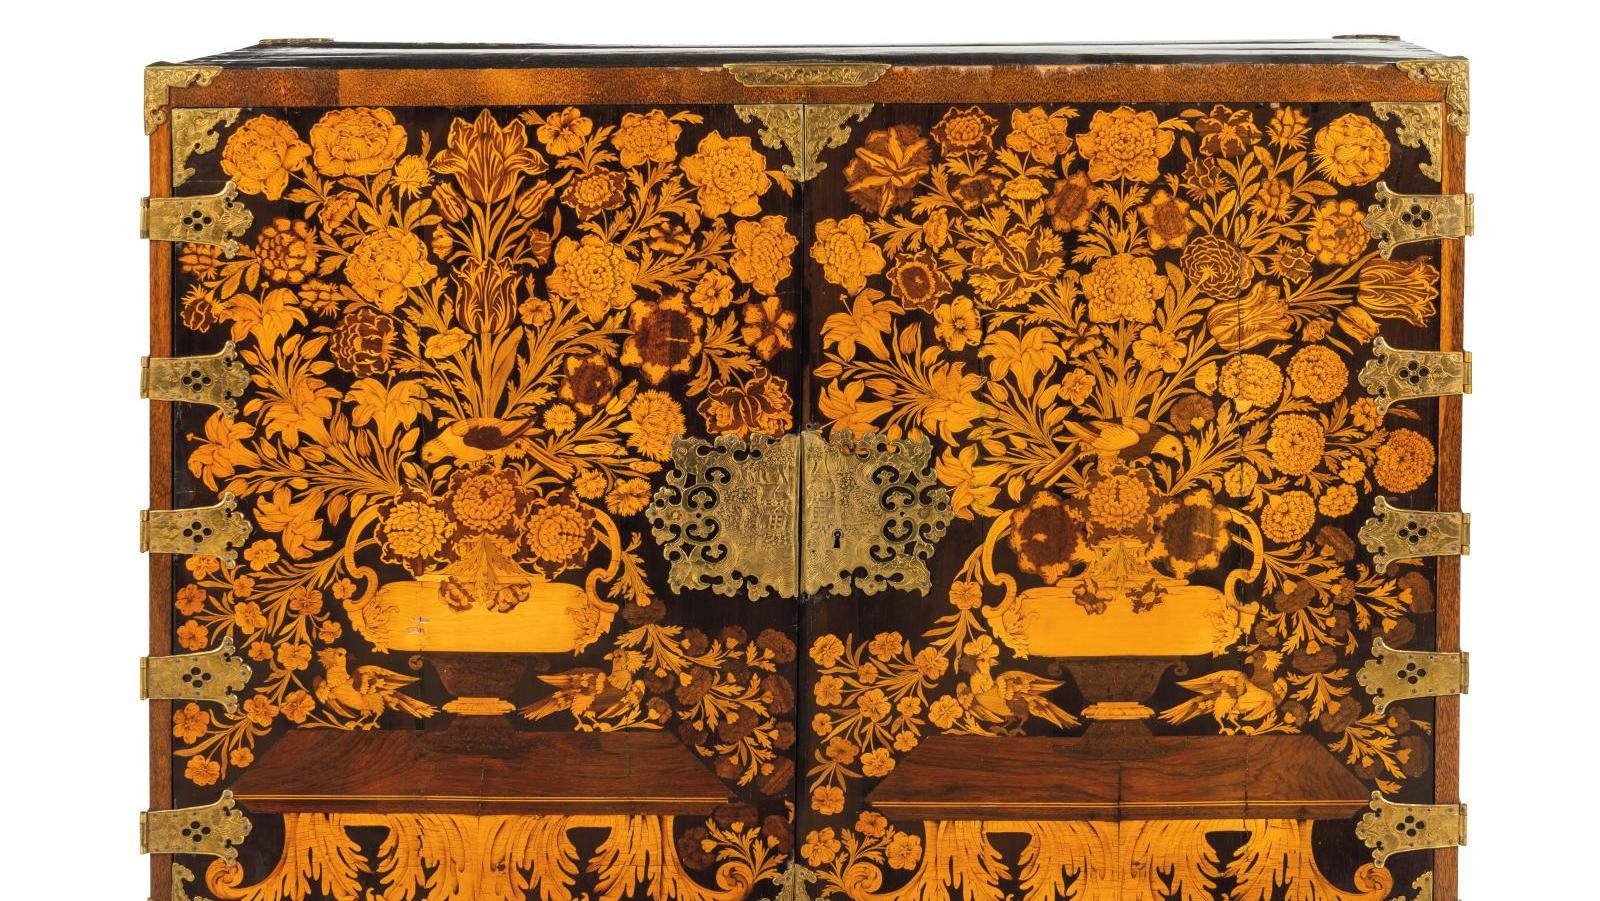 Hollande, fin du XVIIIe siècle. Cabinet en marqueterie de fleurs et vernis aventurine,... Un vrai tableau de fleurs hollandais du XVIIe